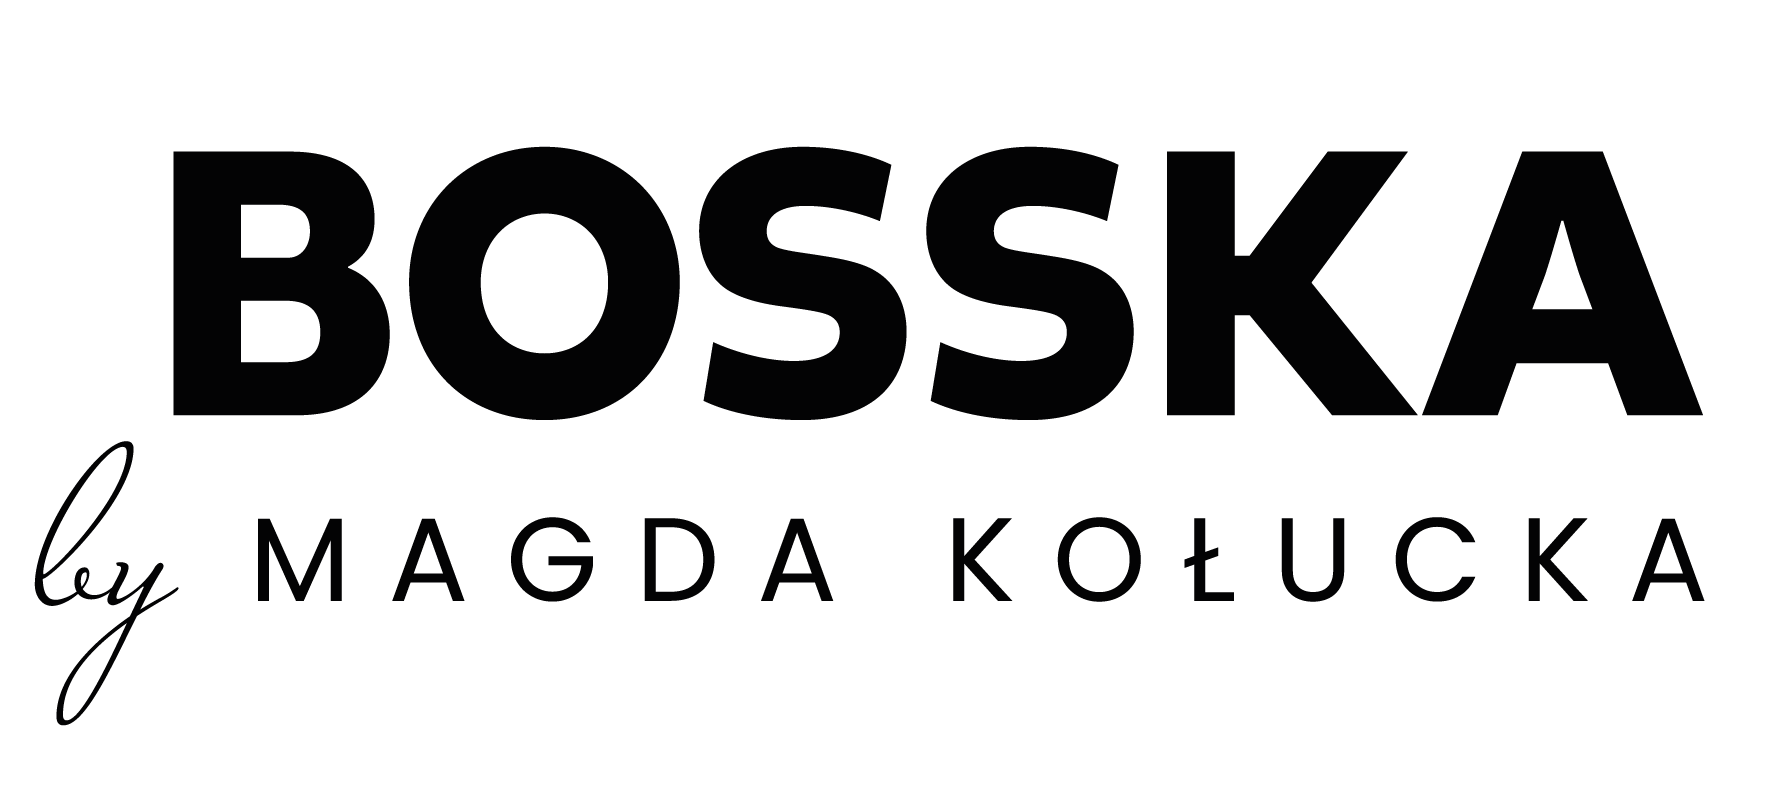 LadyBosska logo